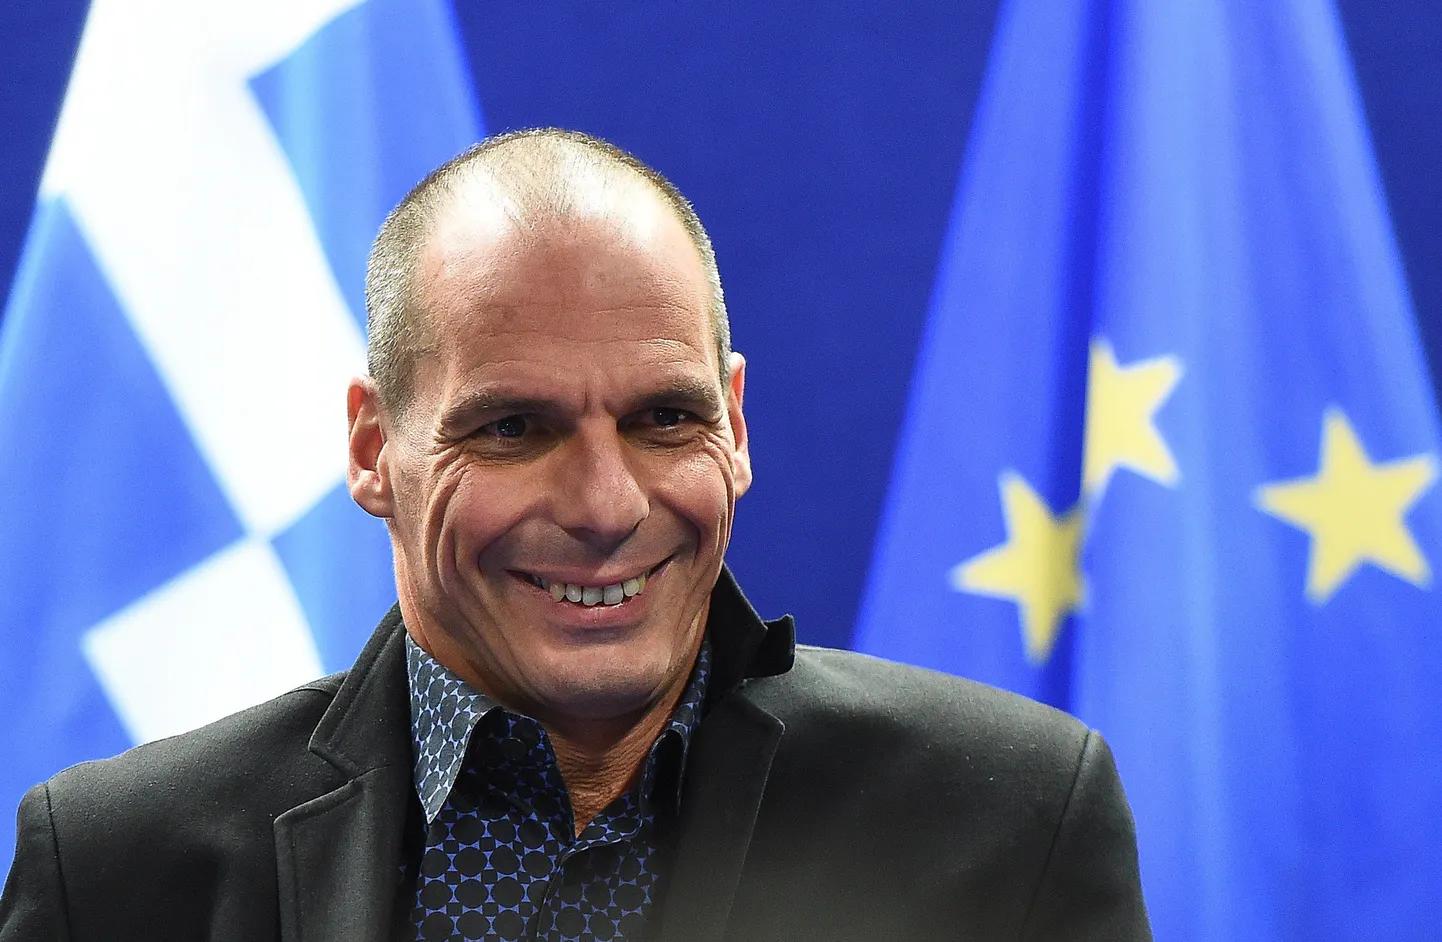 Kreeka rahandusminister Yanis Varoufakis